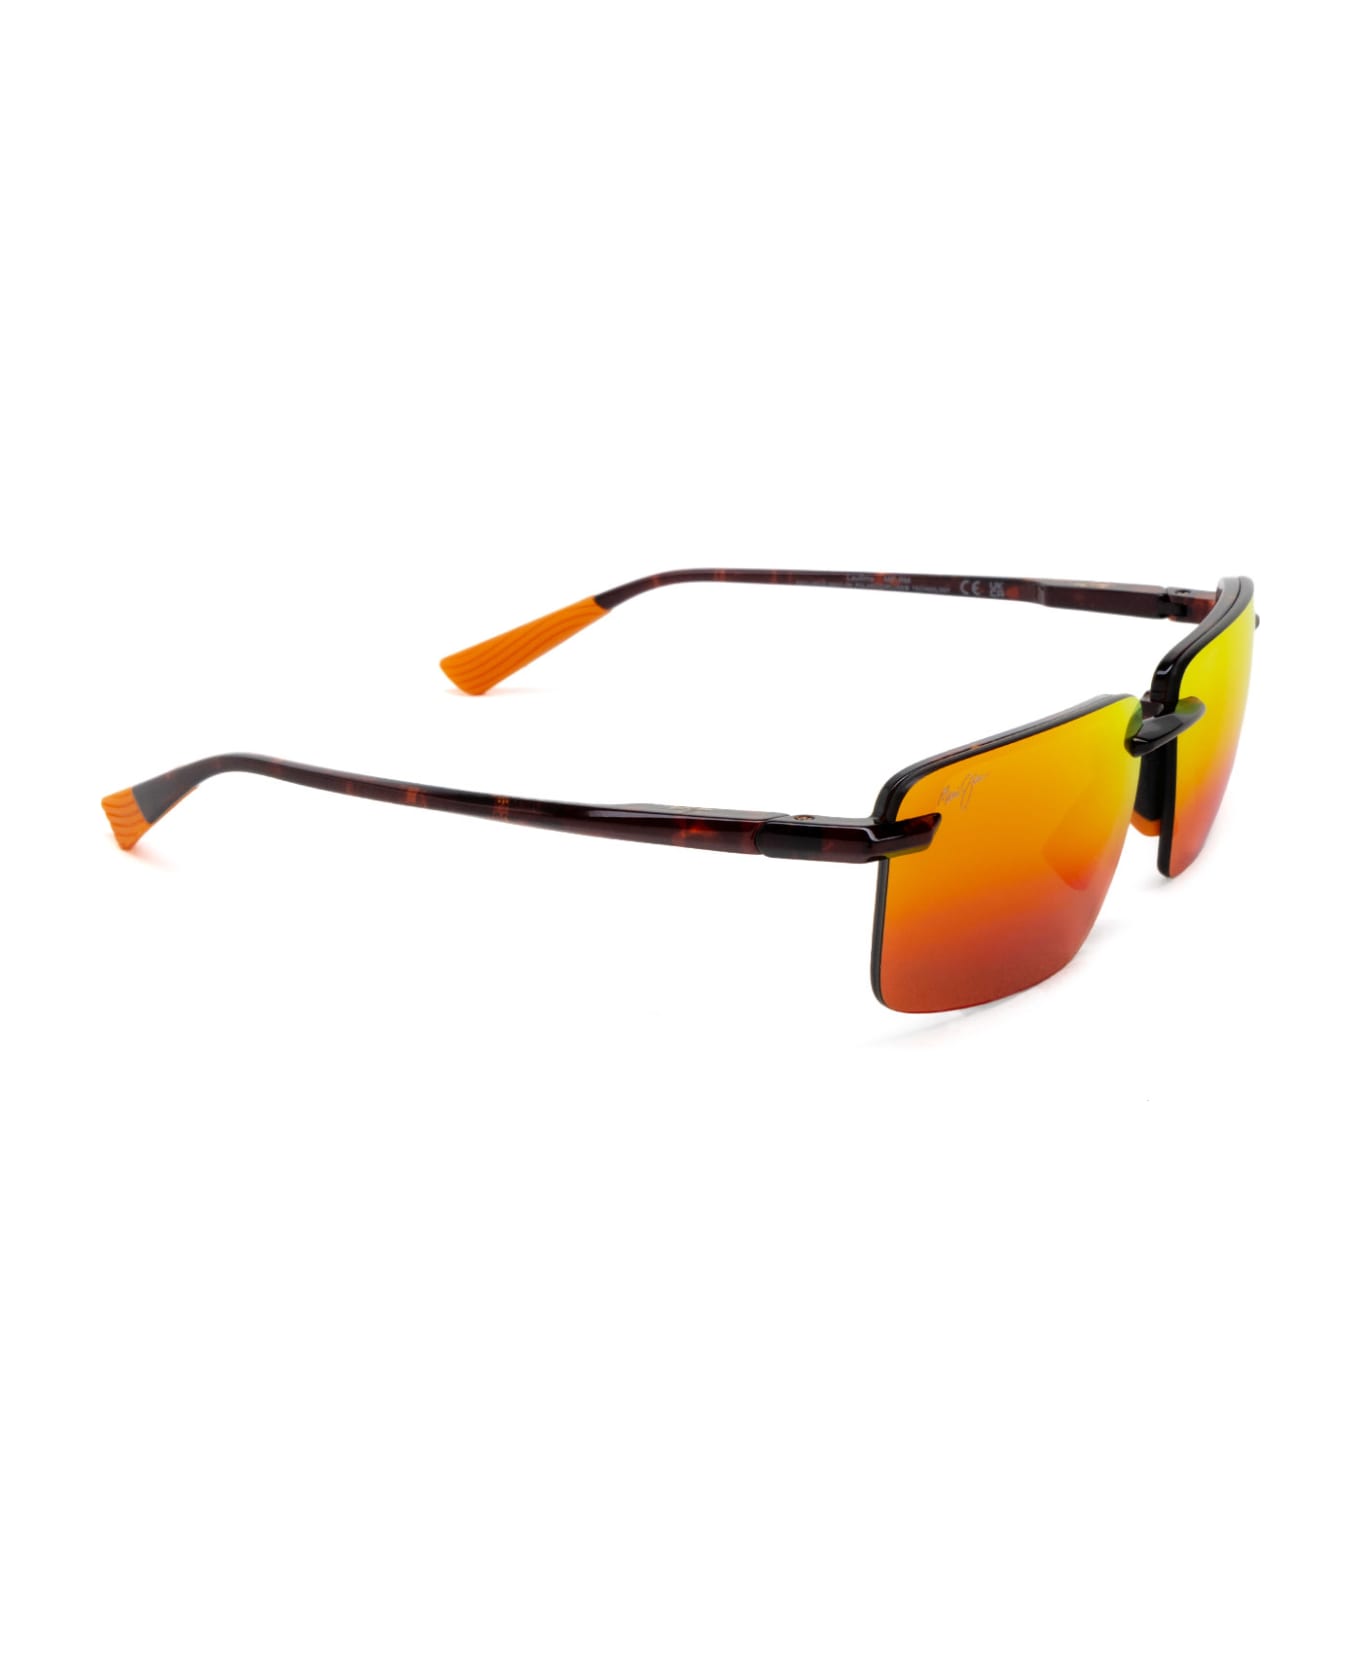 Maui Jim Mj626 Shiny Reddish Sunglasses - Shiny Reddish サングラス